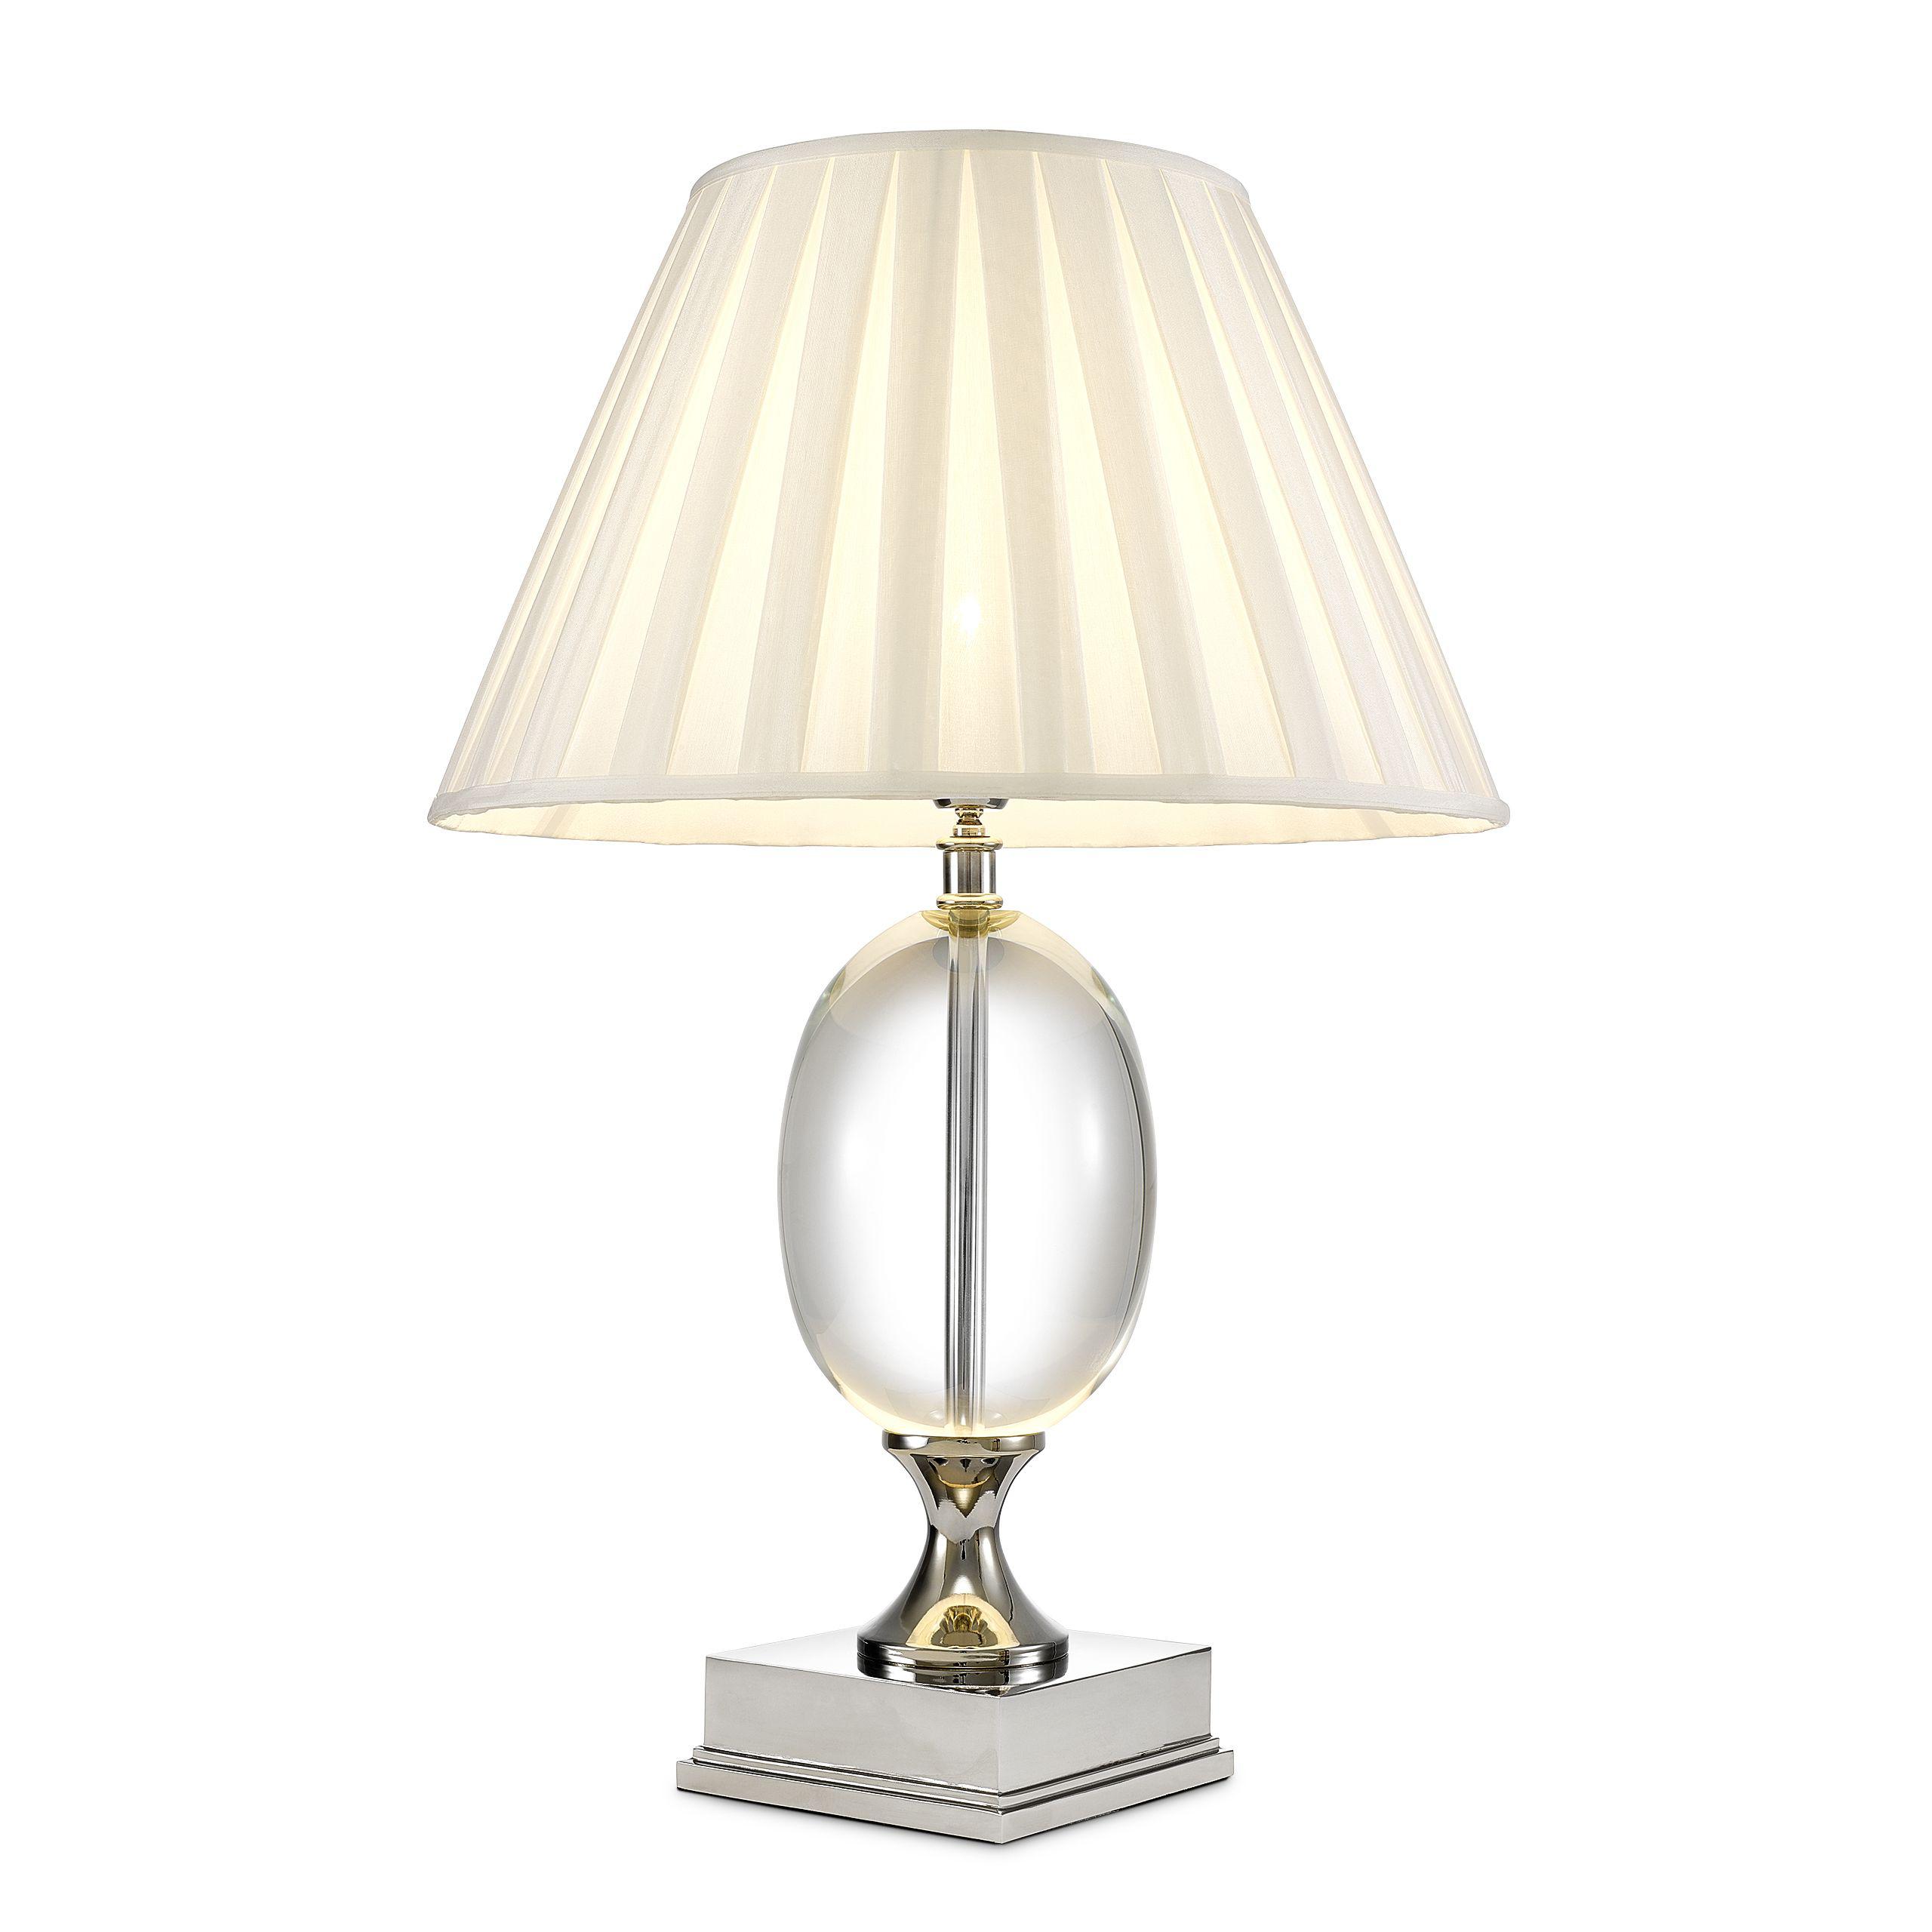 Купить Настольная лампа Table Lamp Galvin в интернет-магазине roooms.ru